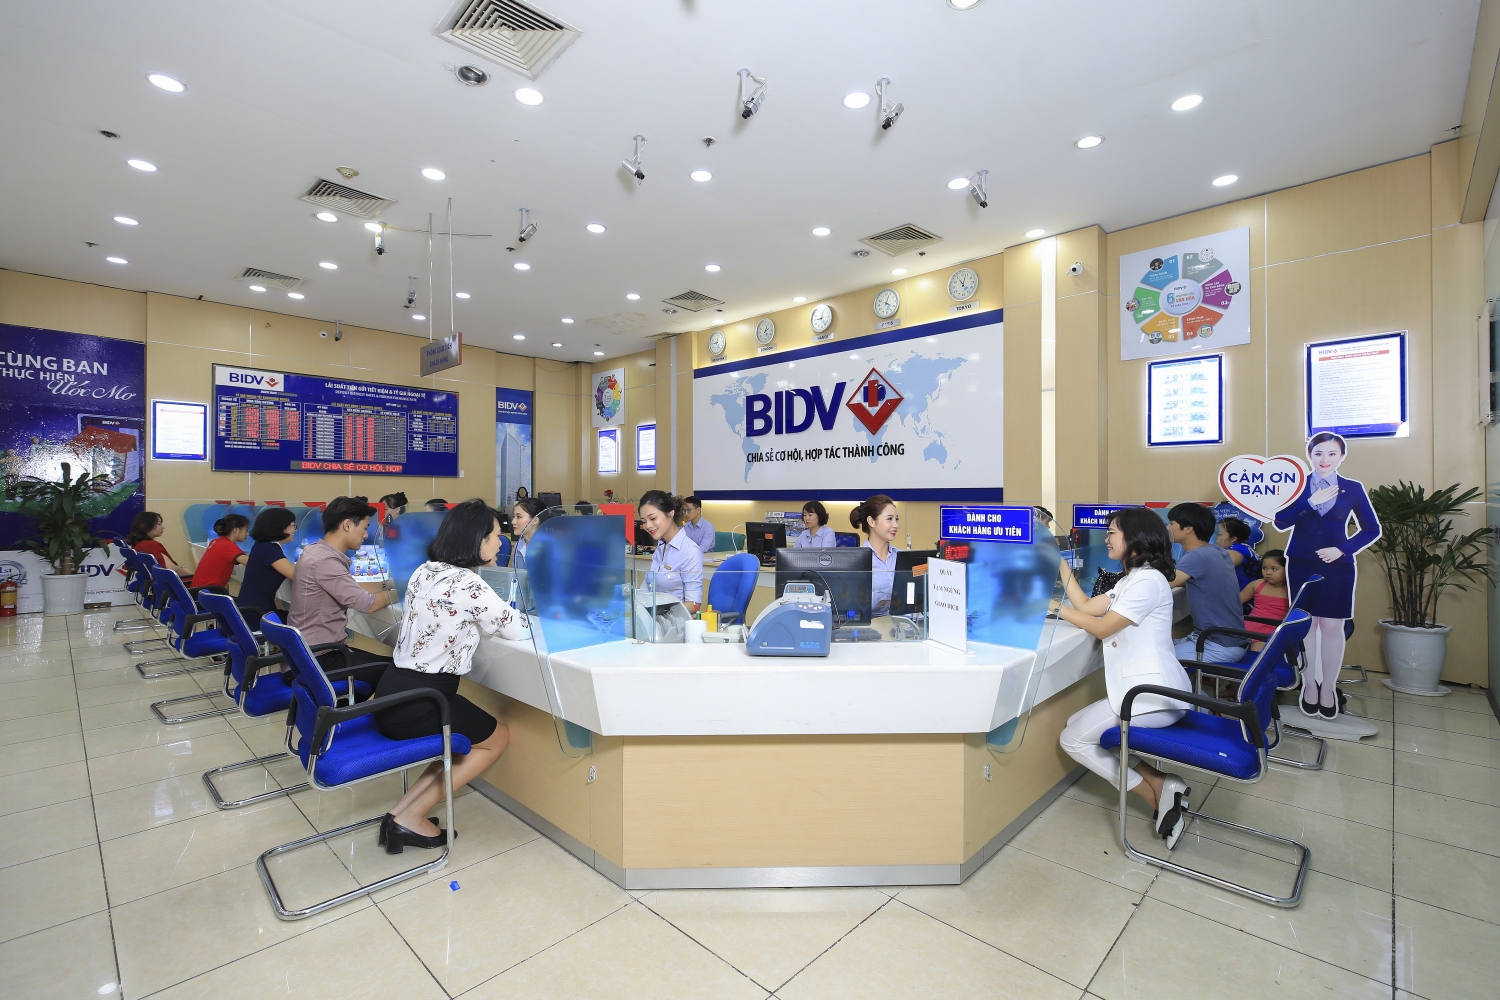 BIDV - Cho vay duy trì sản xuất kinh doanh mùa Covid 19, lãi suất từ 6,5%/năm